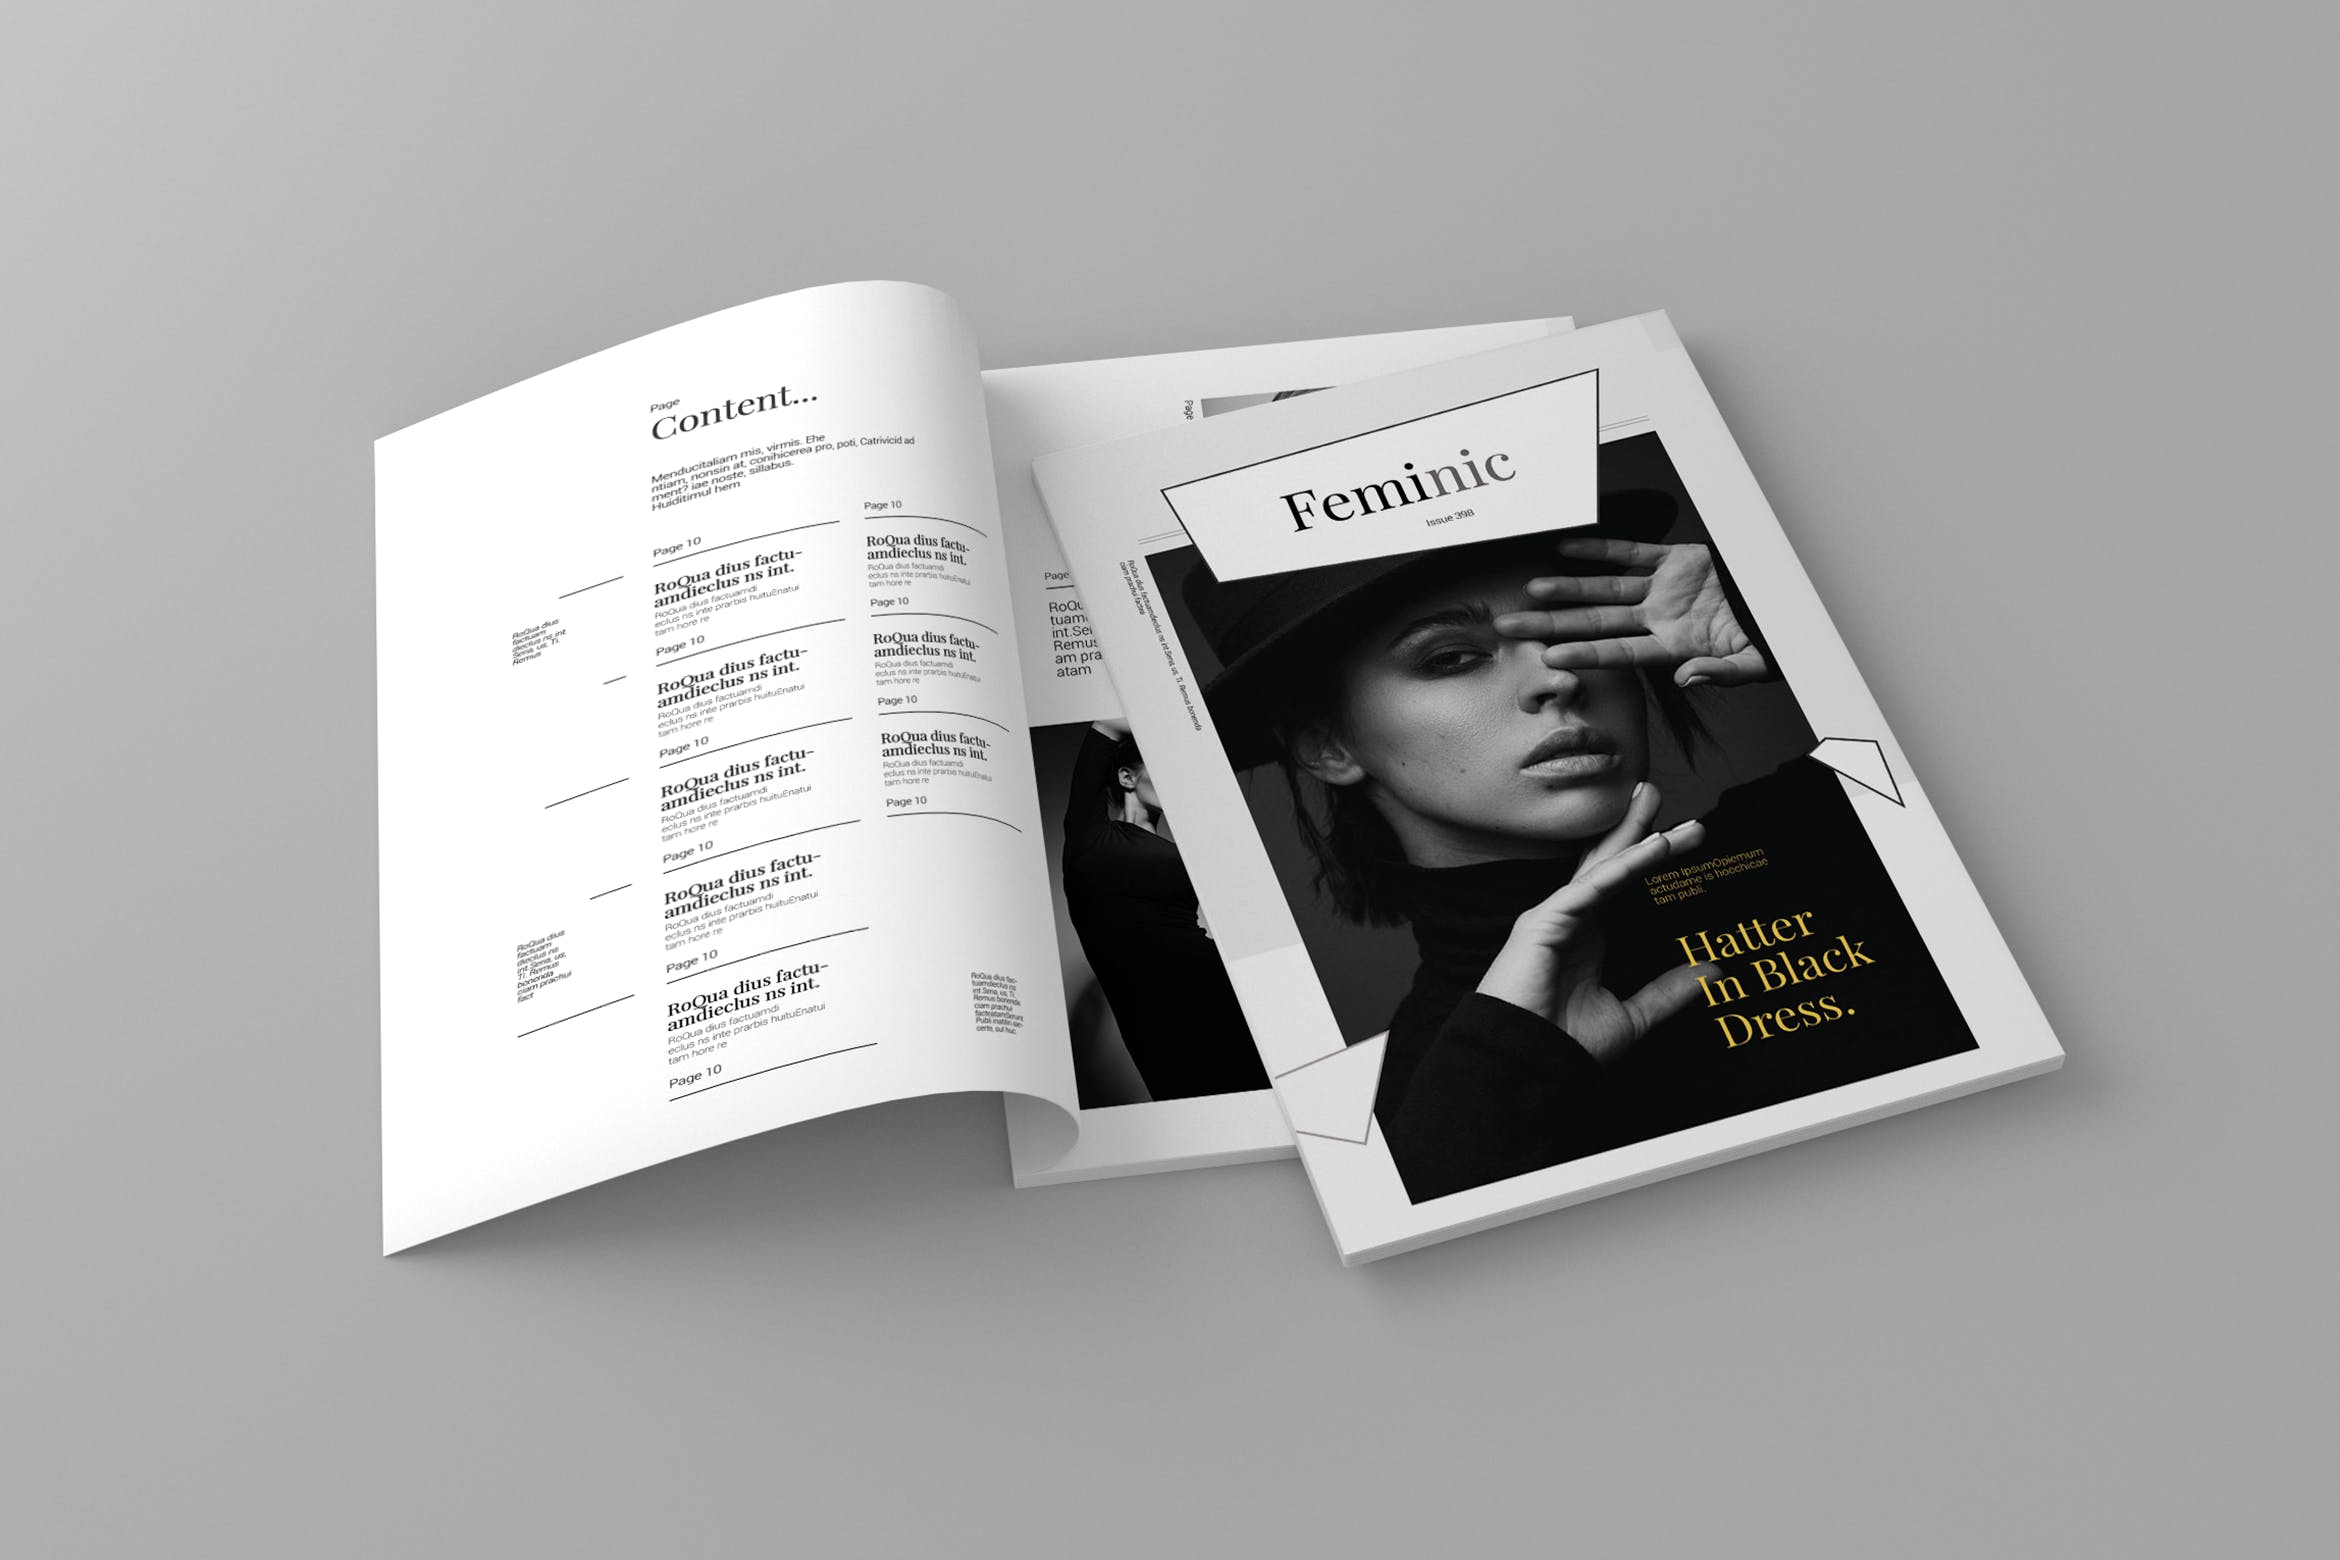 高端简约排版风格女性主题杂志设计模板 Feminic – Magazine Template插图